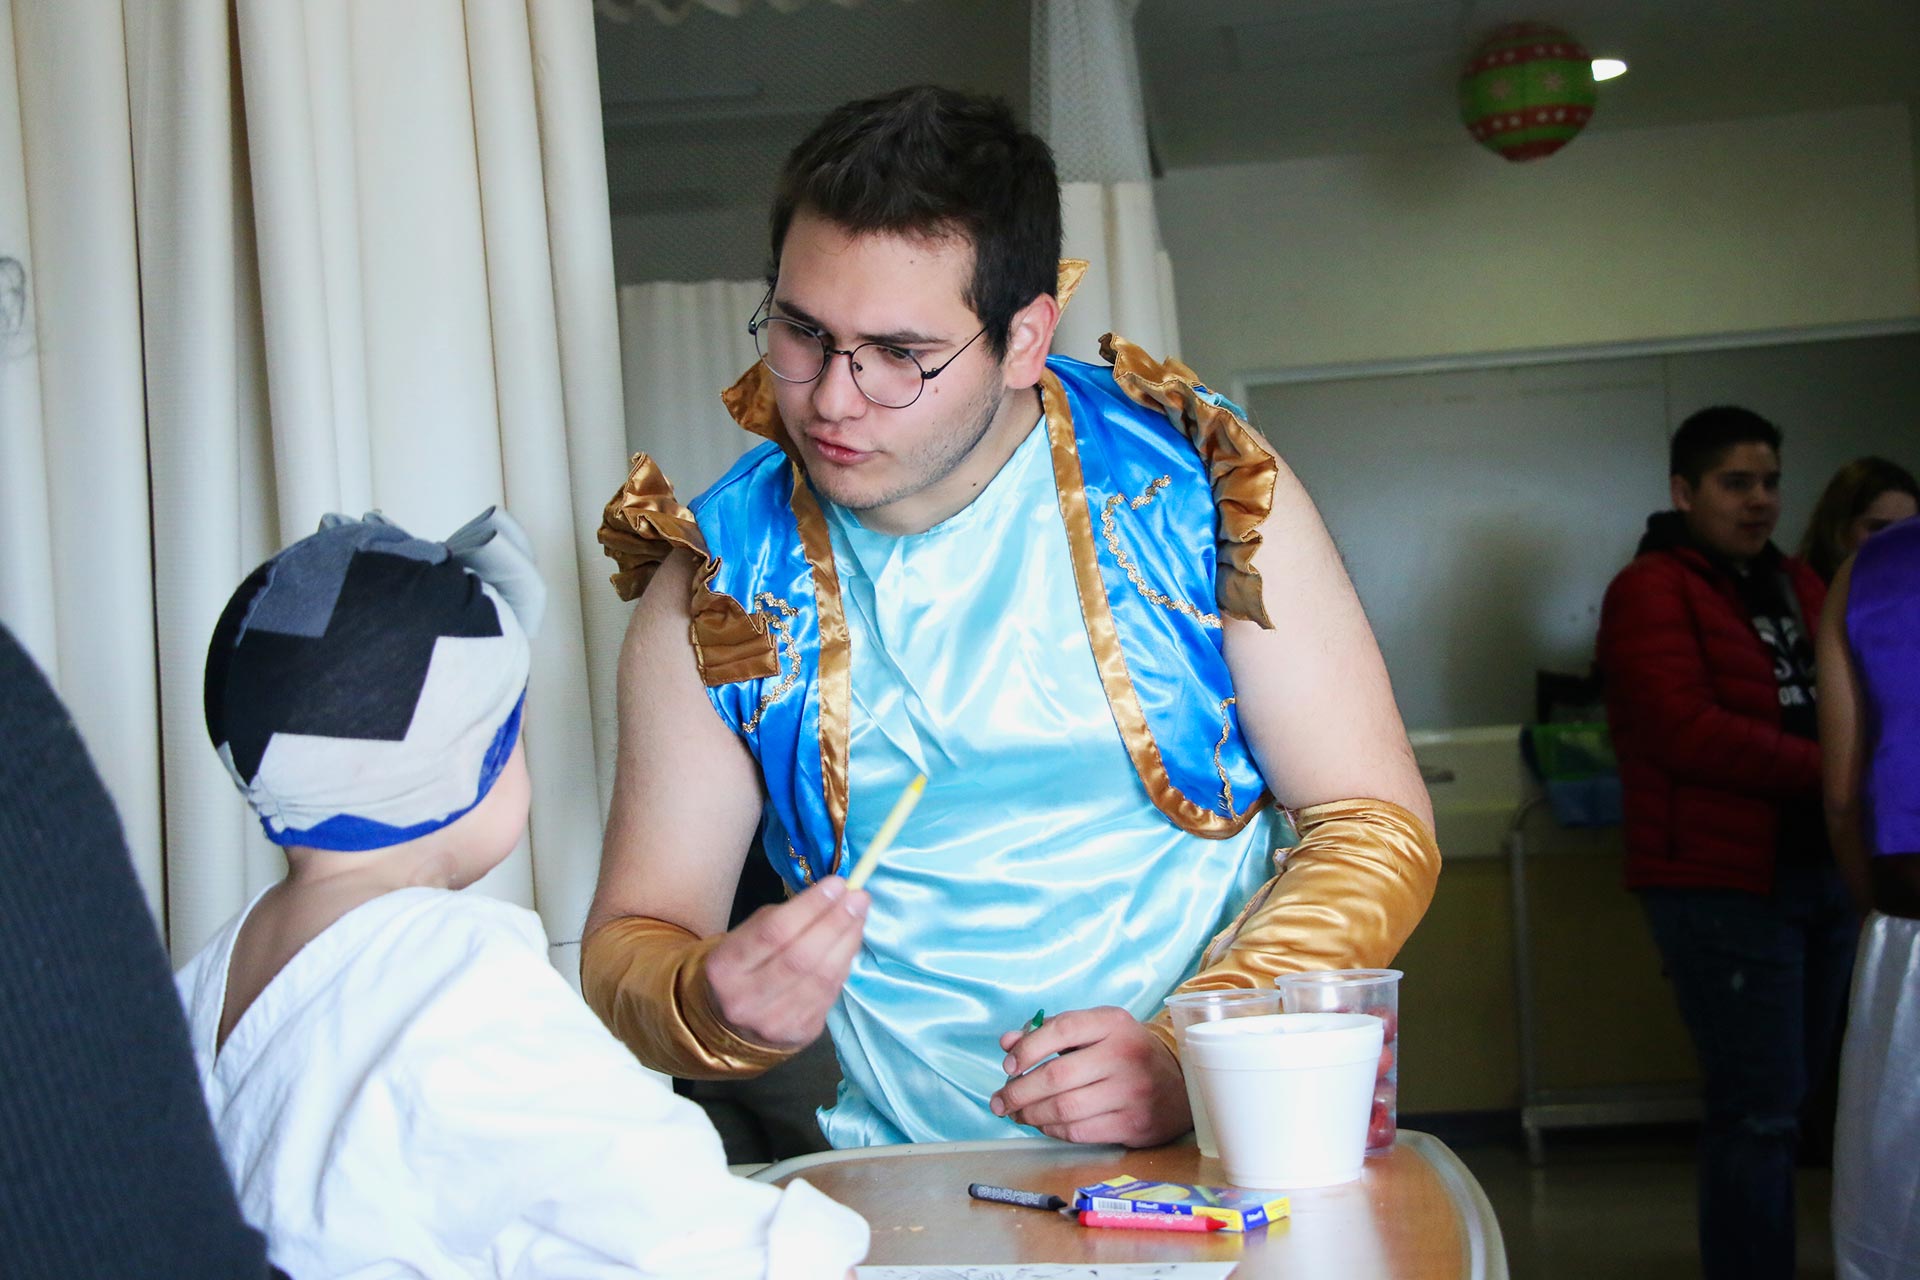 Aarón Vásquez, uno de los estudiantes del área de ingeniería, está caracterizado de el principe Aladdin juega con una niña y le ayuda a colorear un dibujo